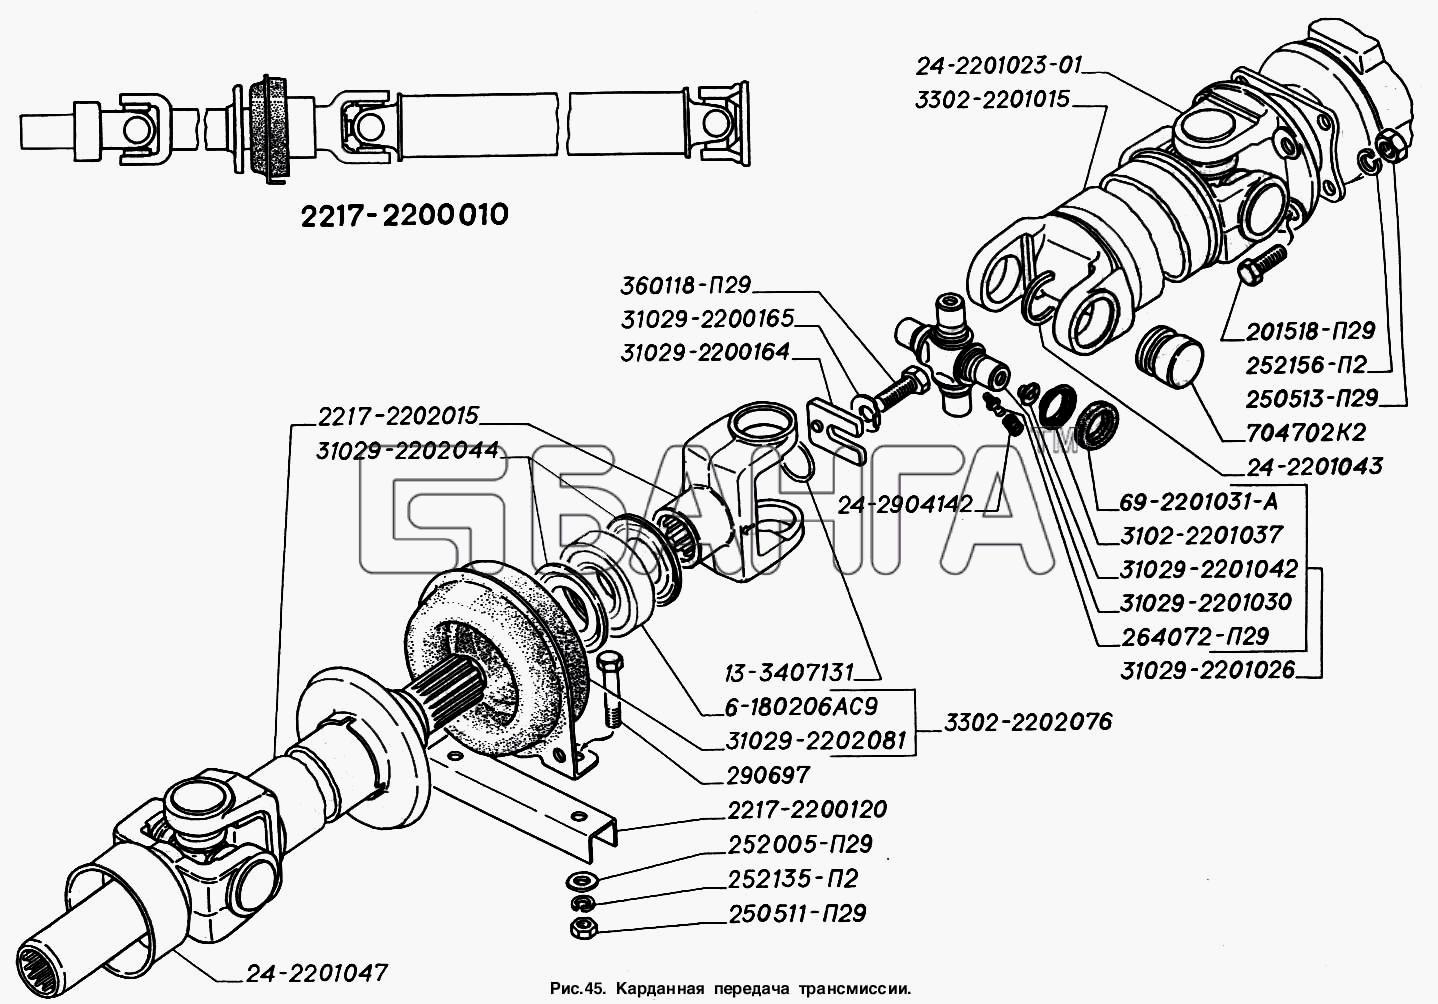 ГАЗ ГАЗ-2217 (Соболь) Схема Карданная передача трансмиссии-111